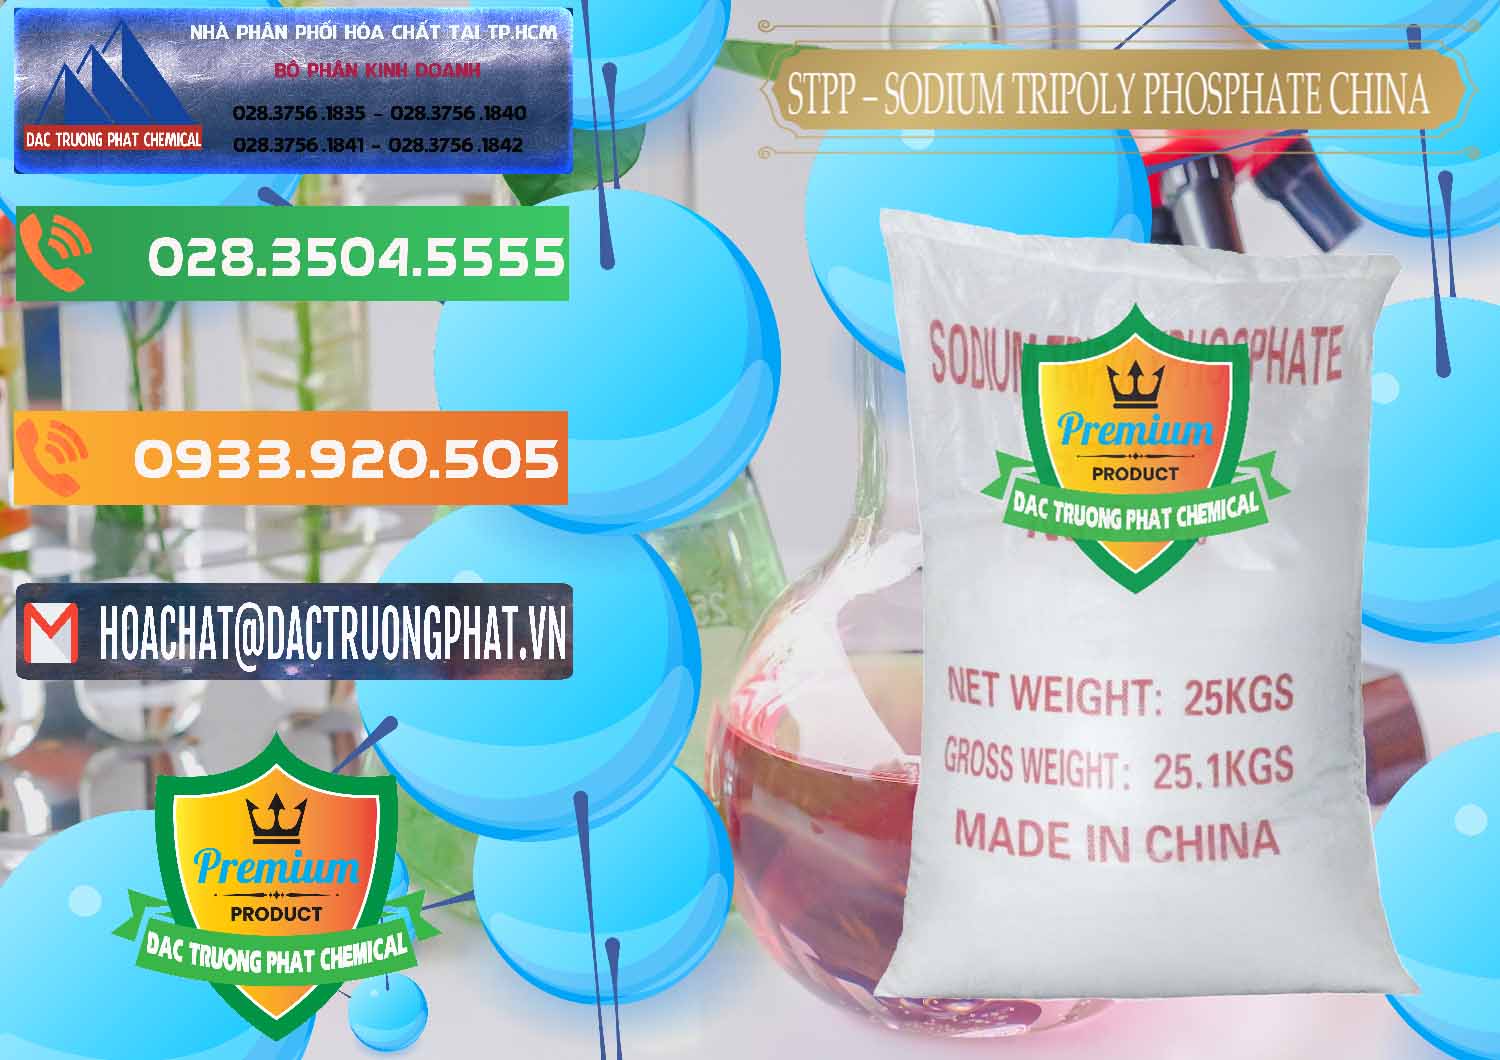 Nơi bán và phân phối Sodium Tripoly Phosphate - STPP 96% Chữ Đỏ Trung Quốc China - 0155 - Cung cấp - nhập khẩu hóa chất tại TP.HCM - hoachatxulynuoc.com.vn